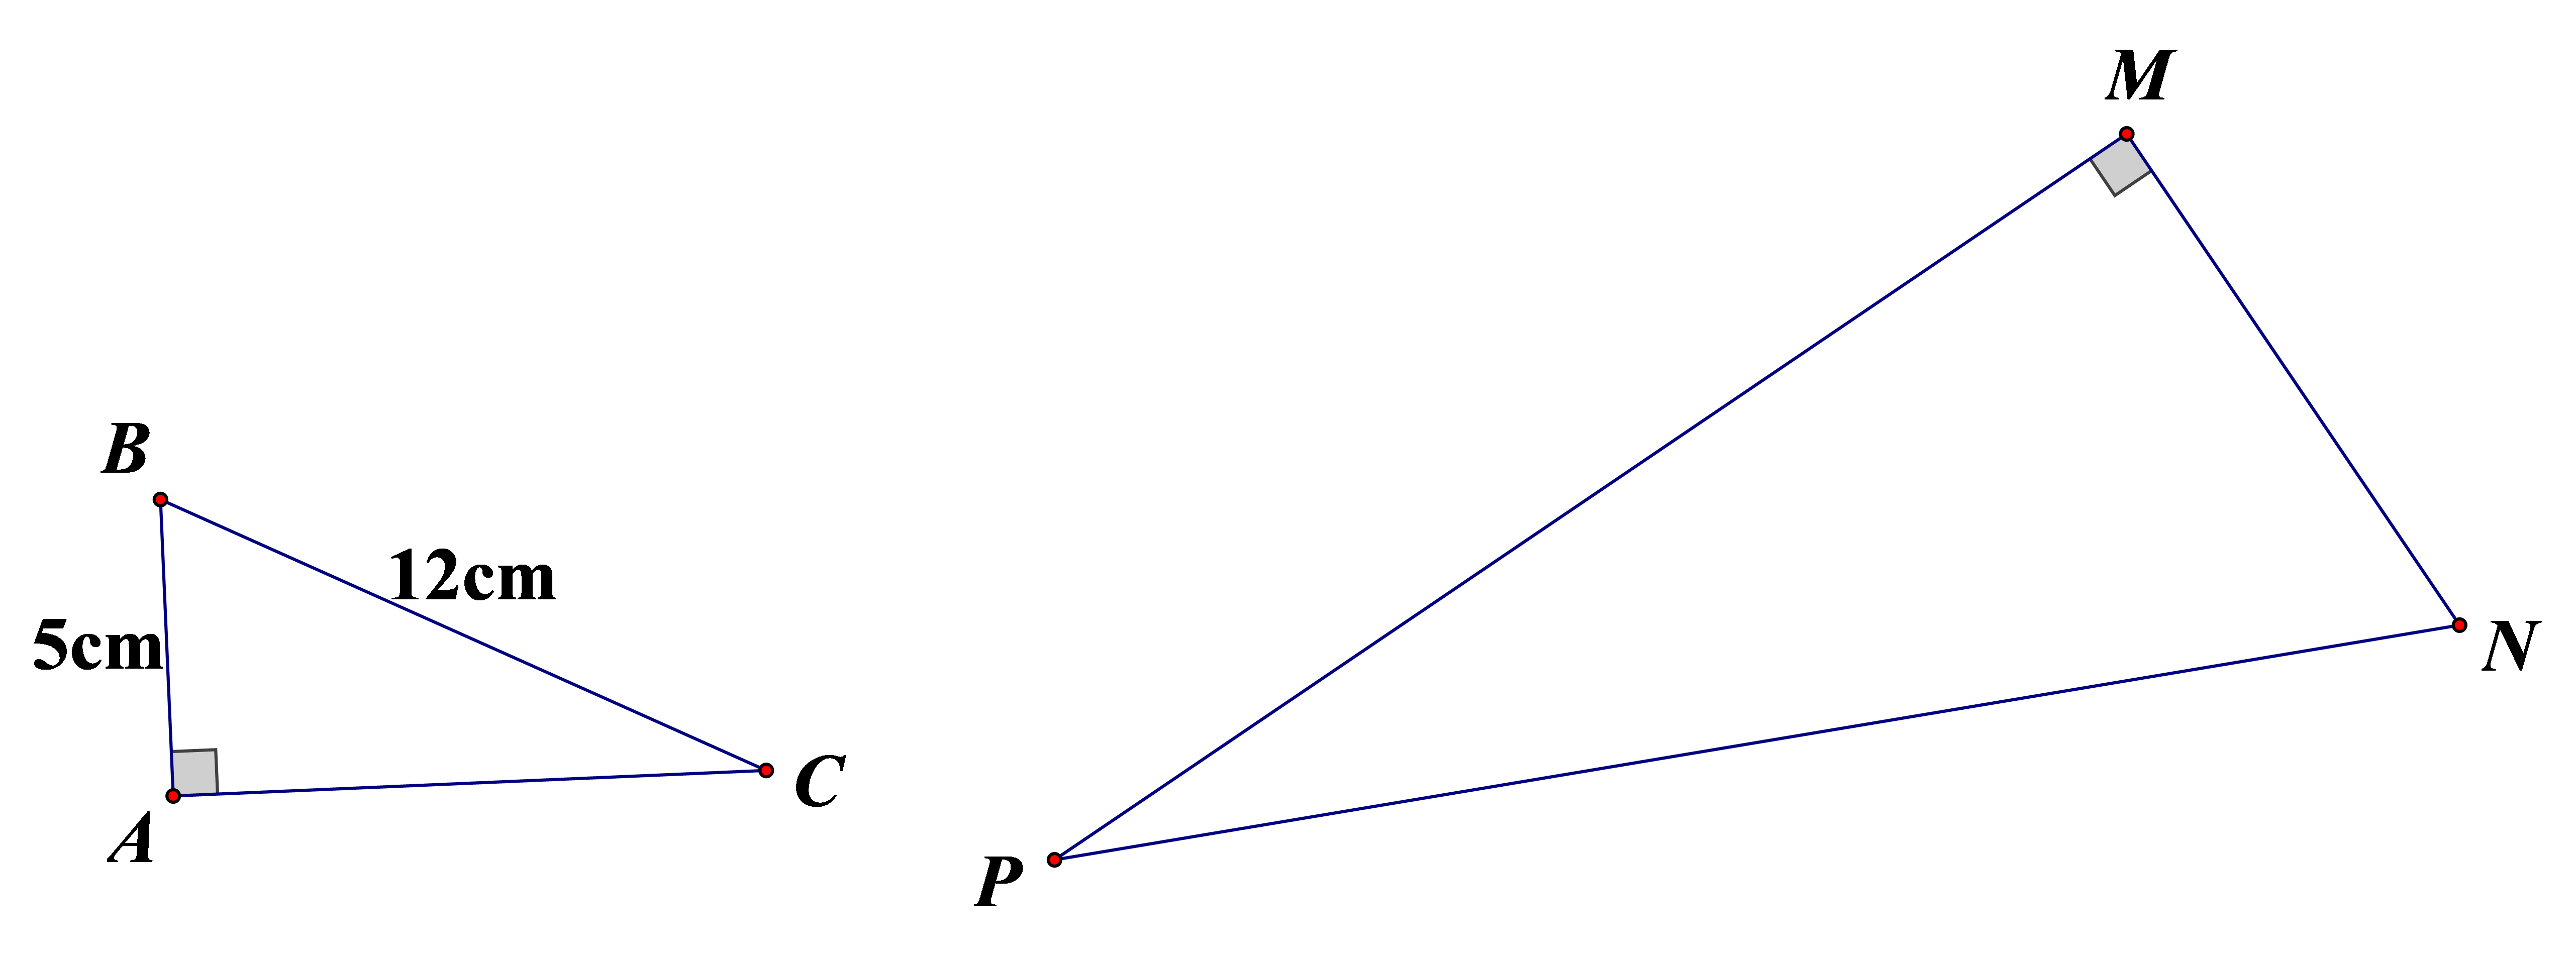 Cho hình vẽ, biết tam giác ABC đồng dạng tam giác MNP. Tỉ số MN/NP bằng   (ảnh 1)